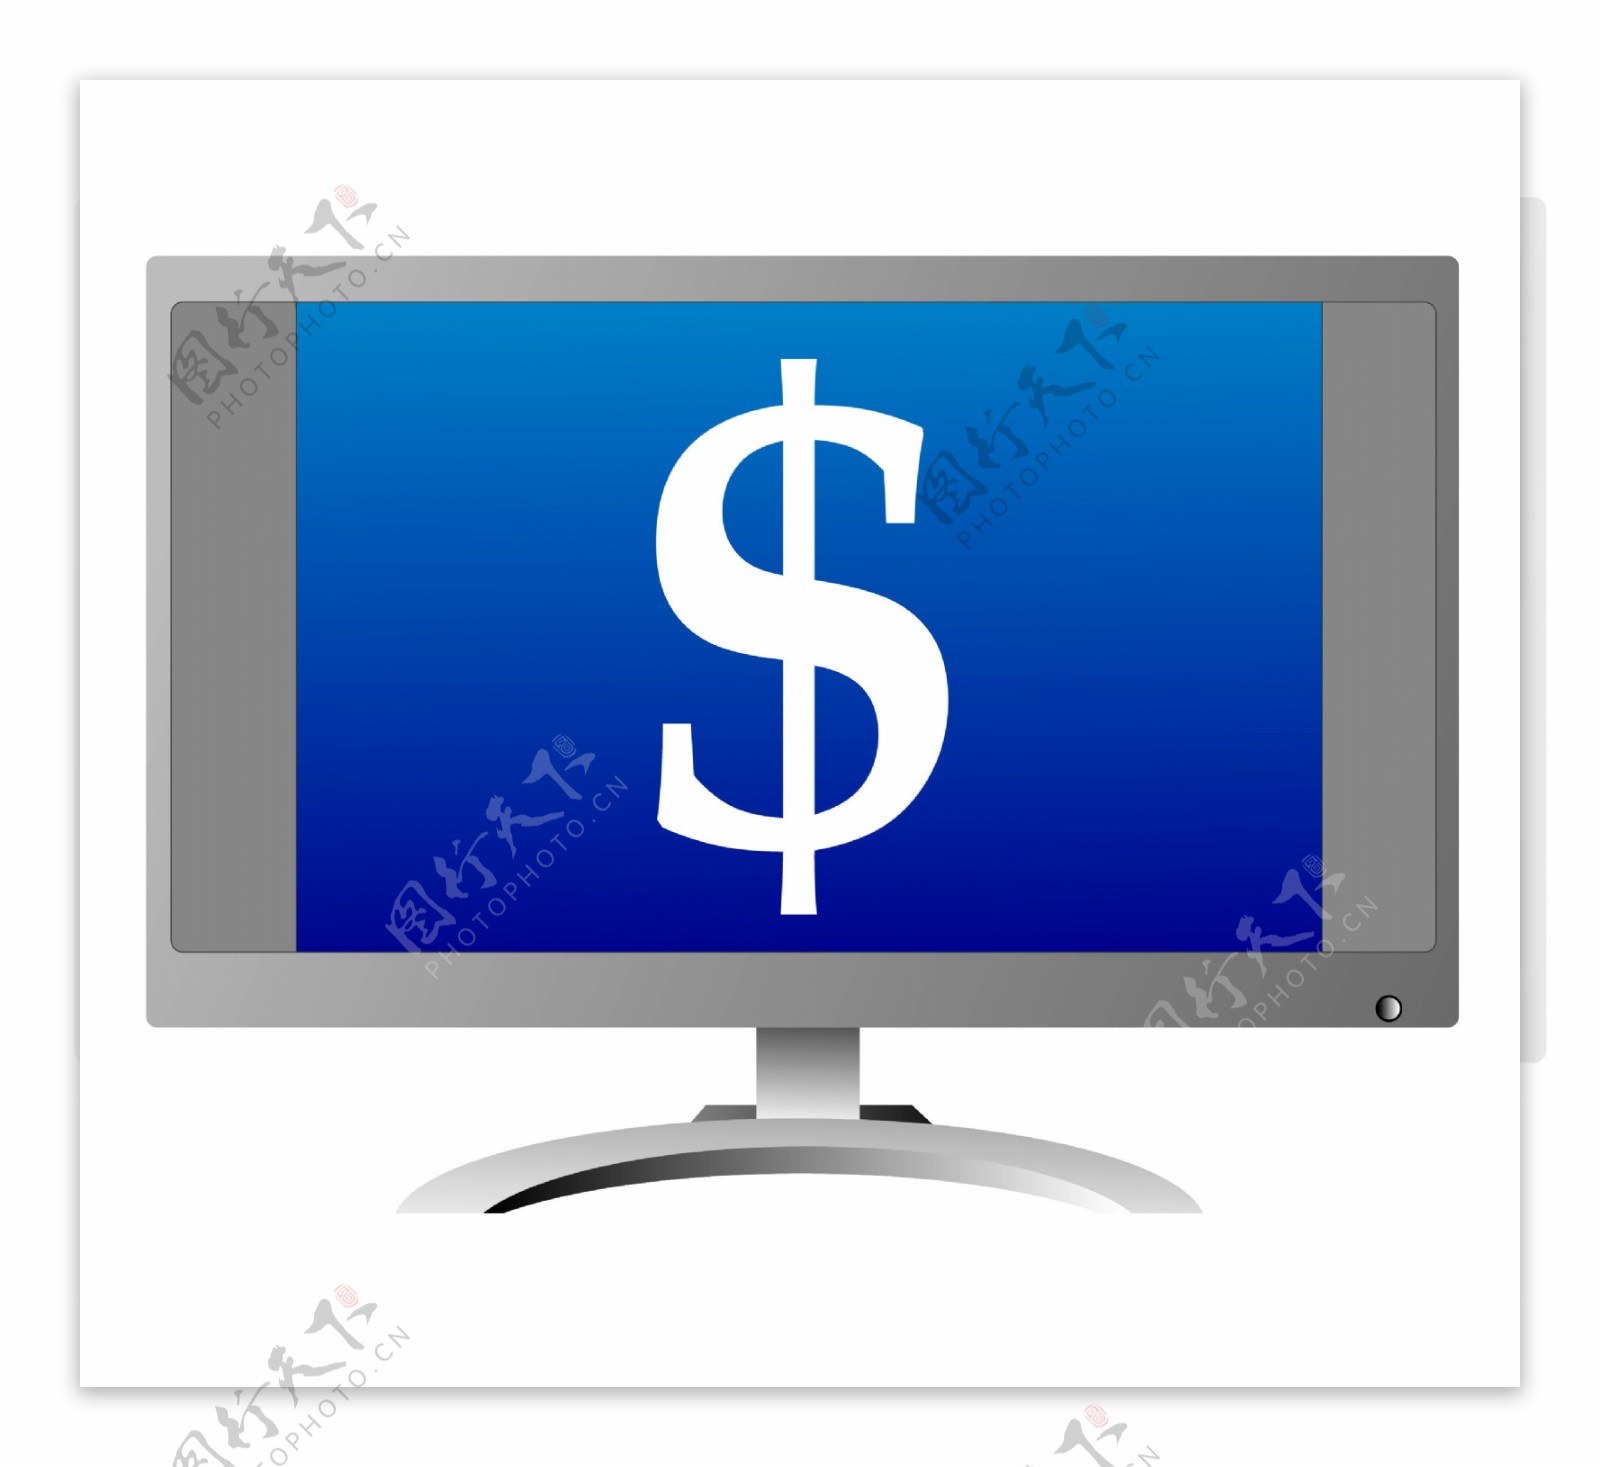 计算机监控货币美元符号的象征